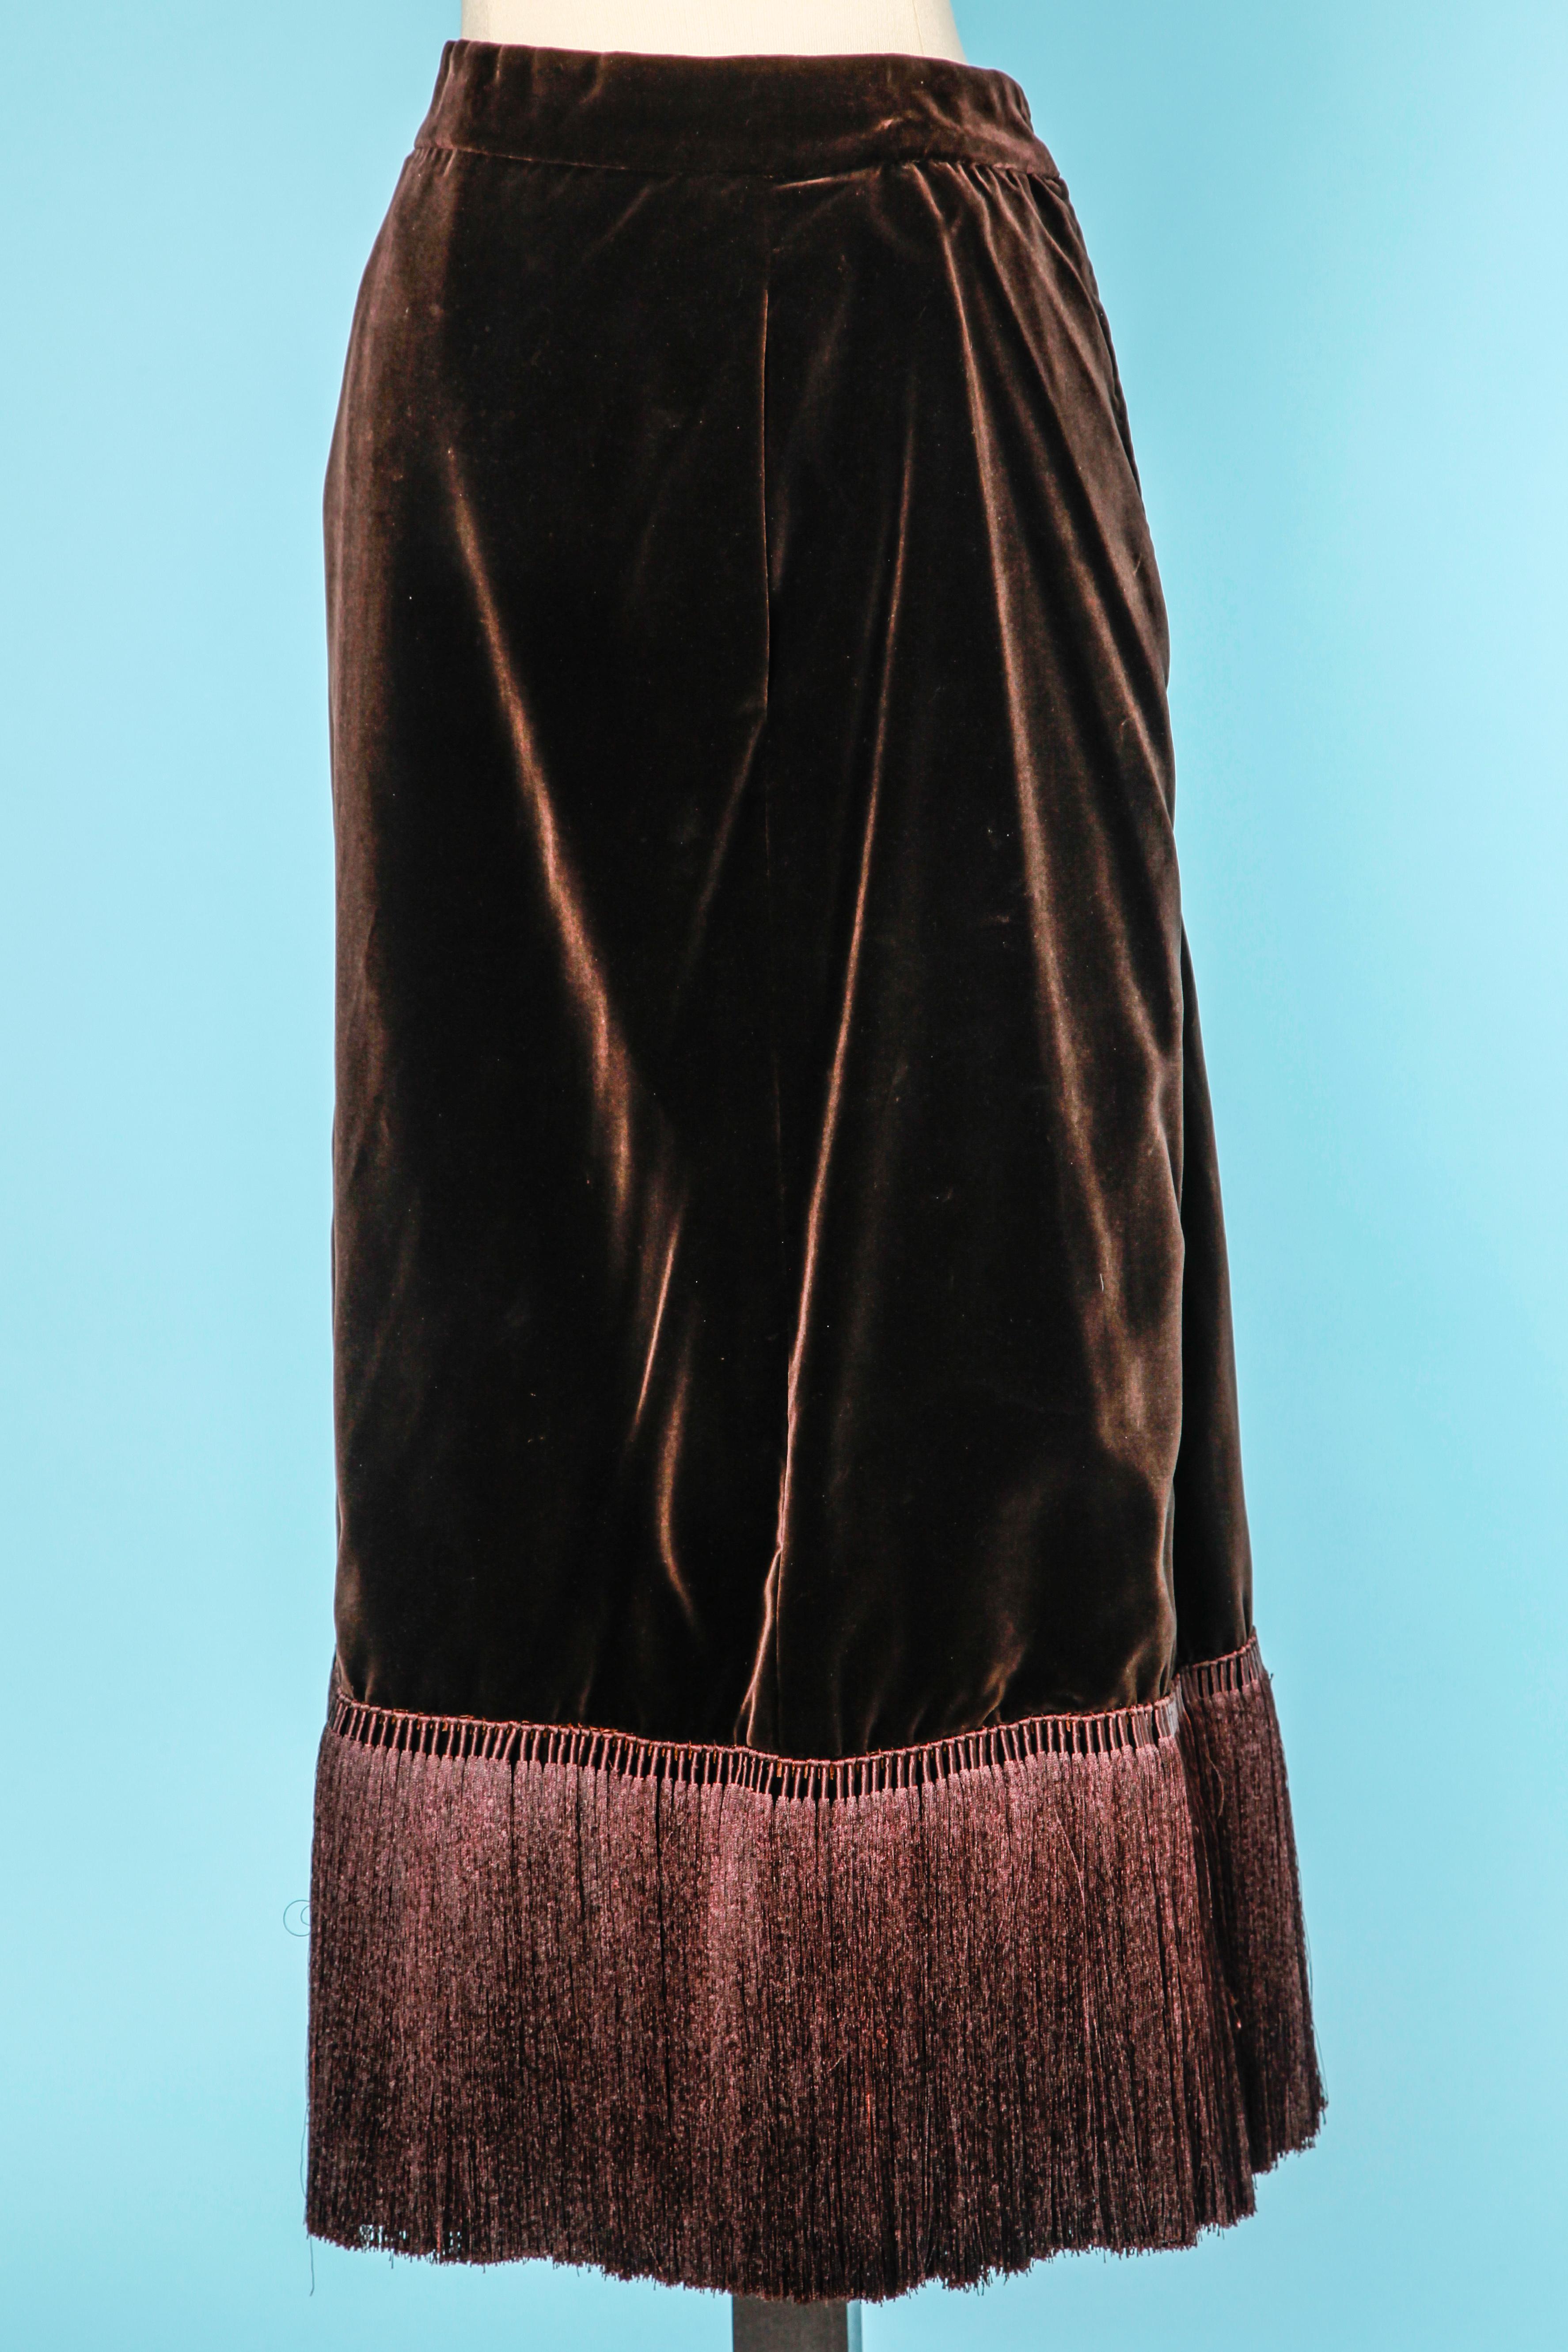 Long brown velvet skirt with silk fringes on the bottom edge 